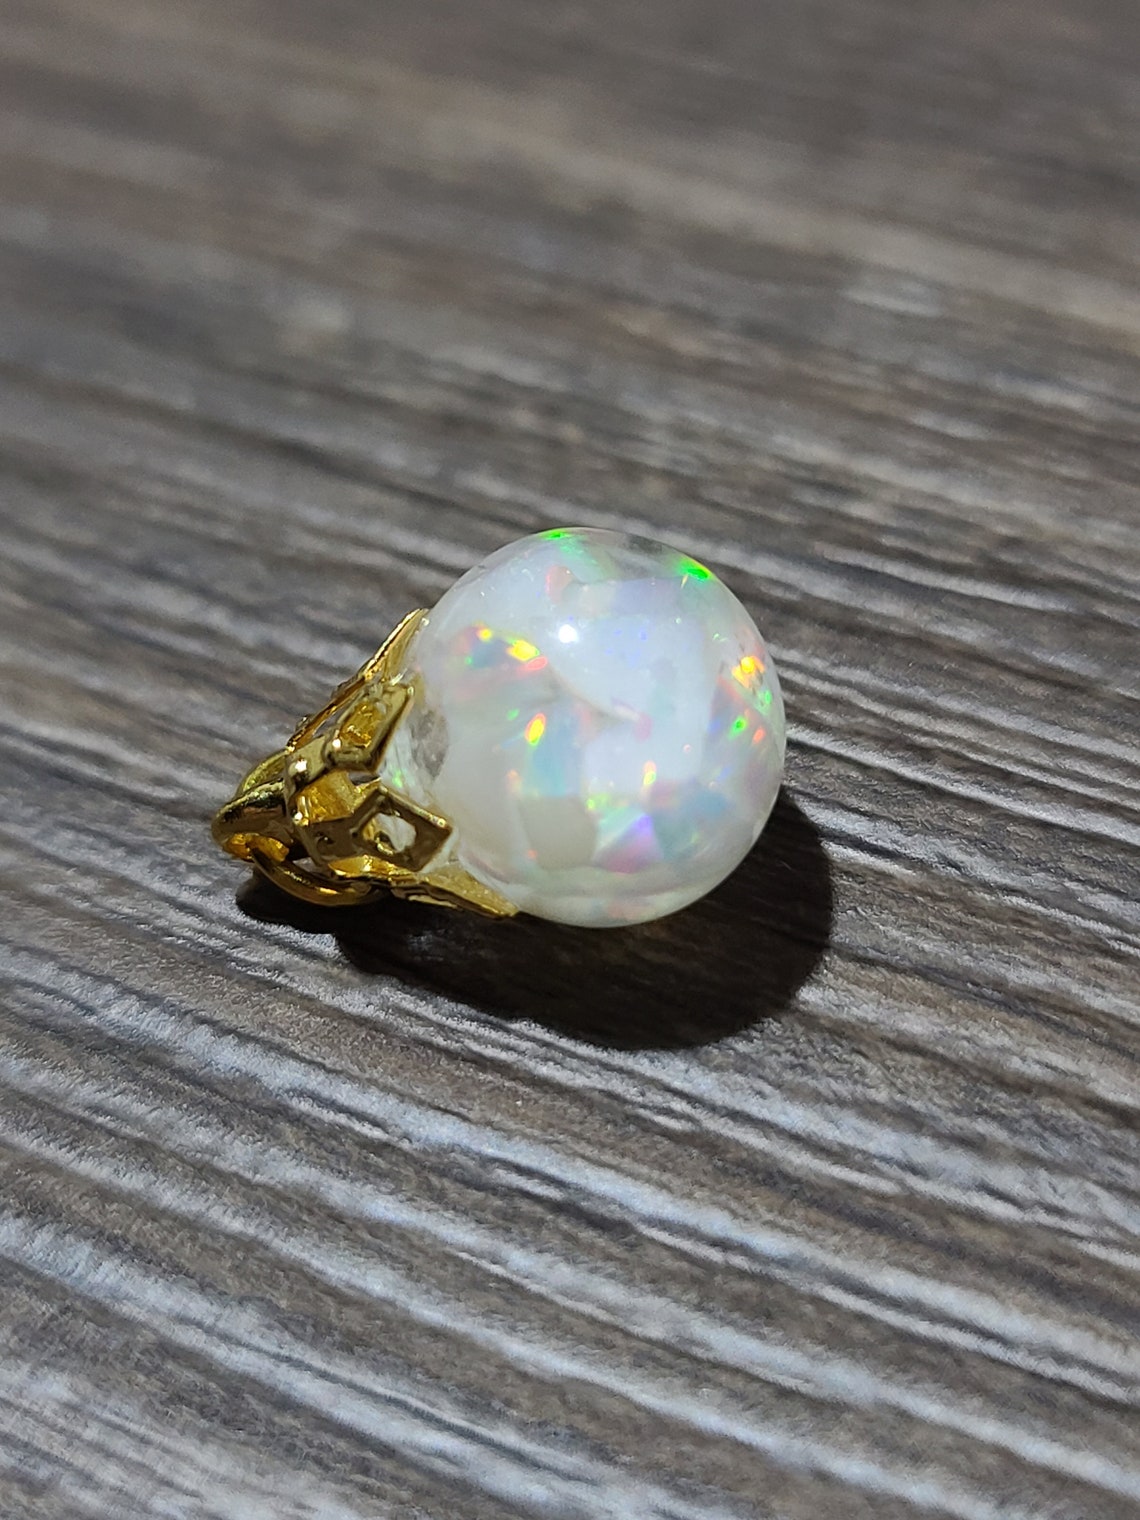 10mm Australian opal charm Floating opal | Etsy